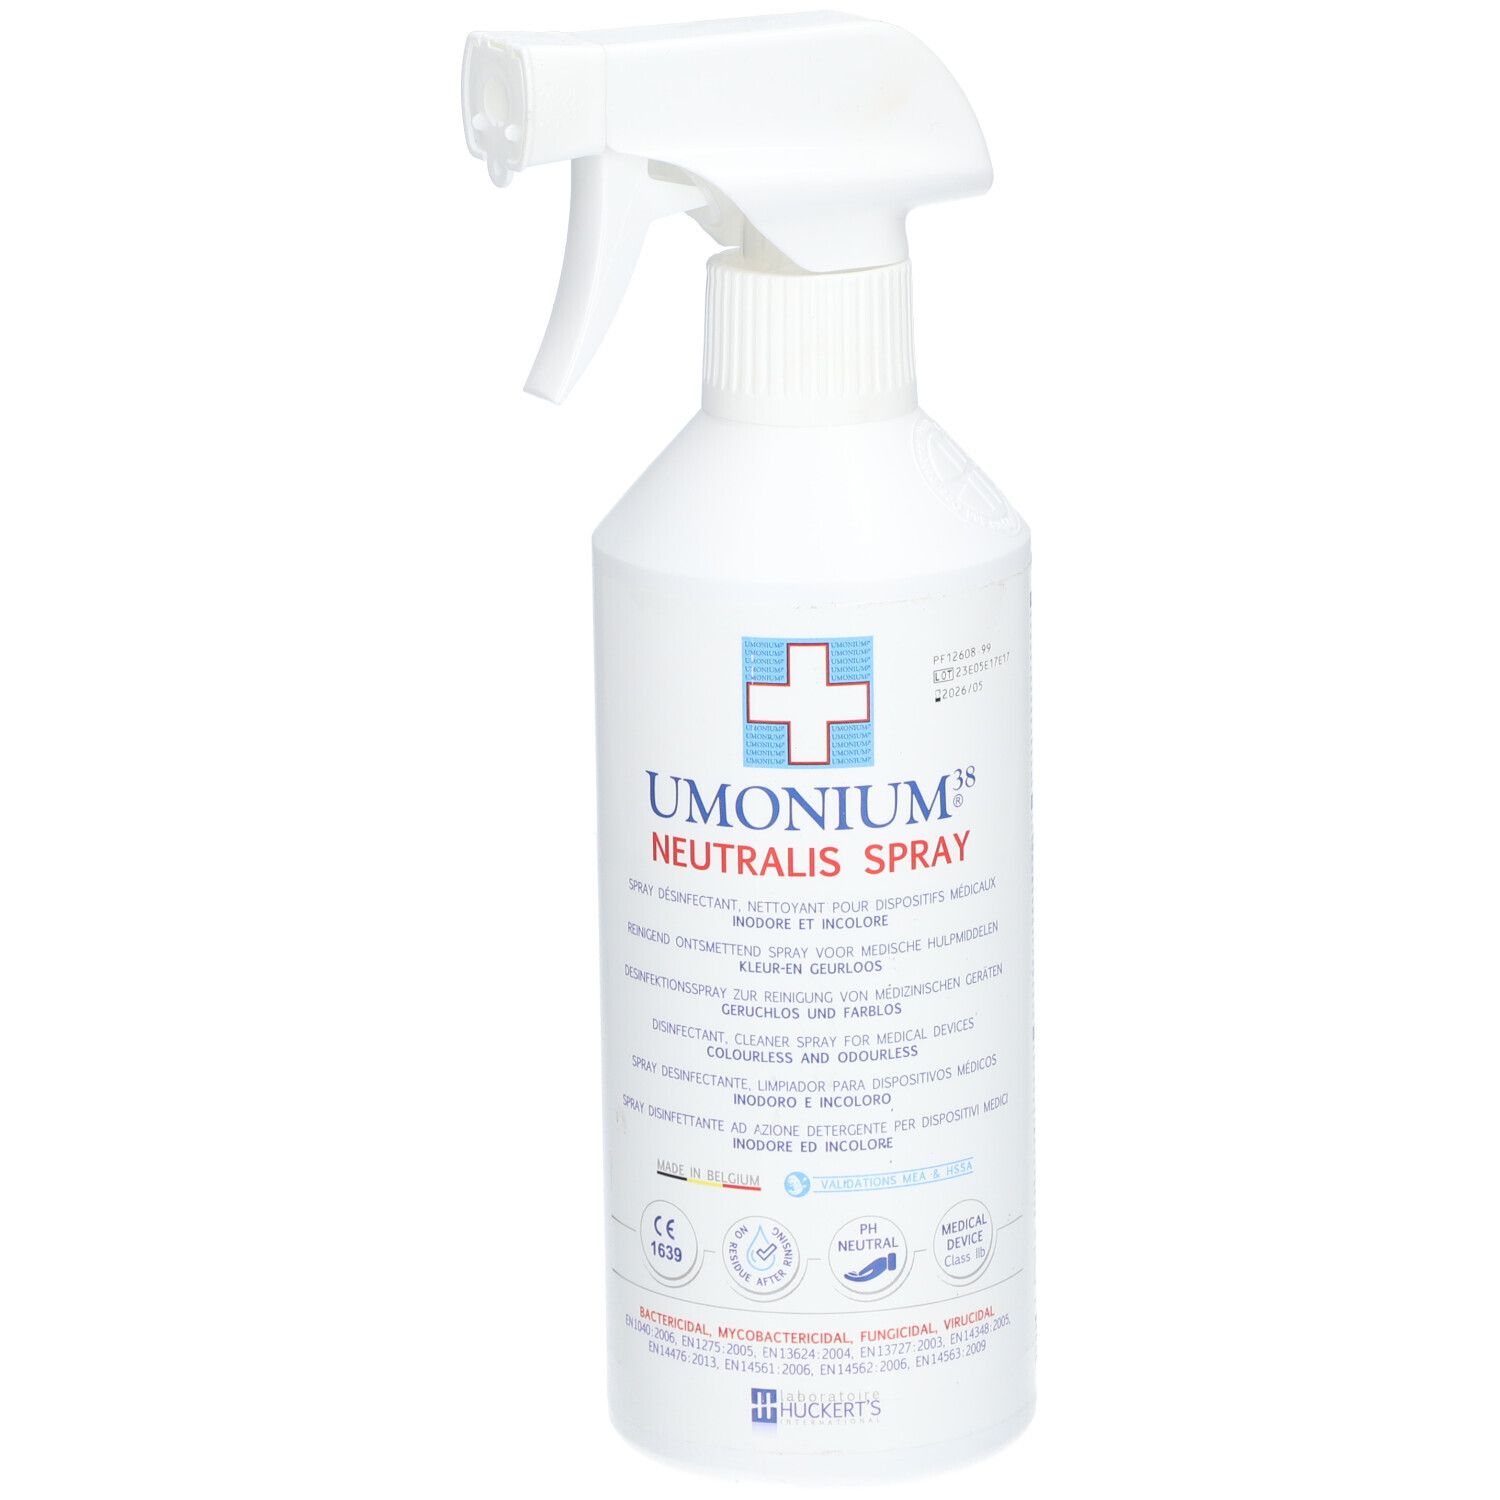 Umonium38® Neutralis Spray